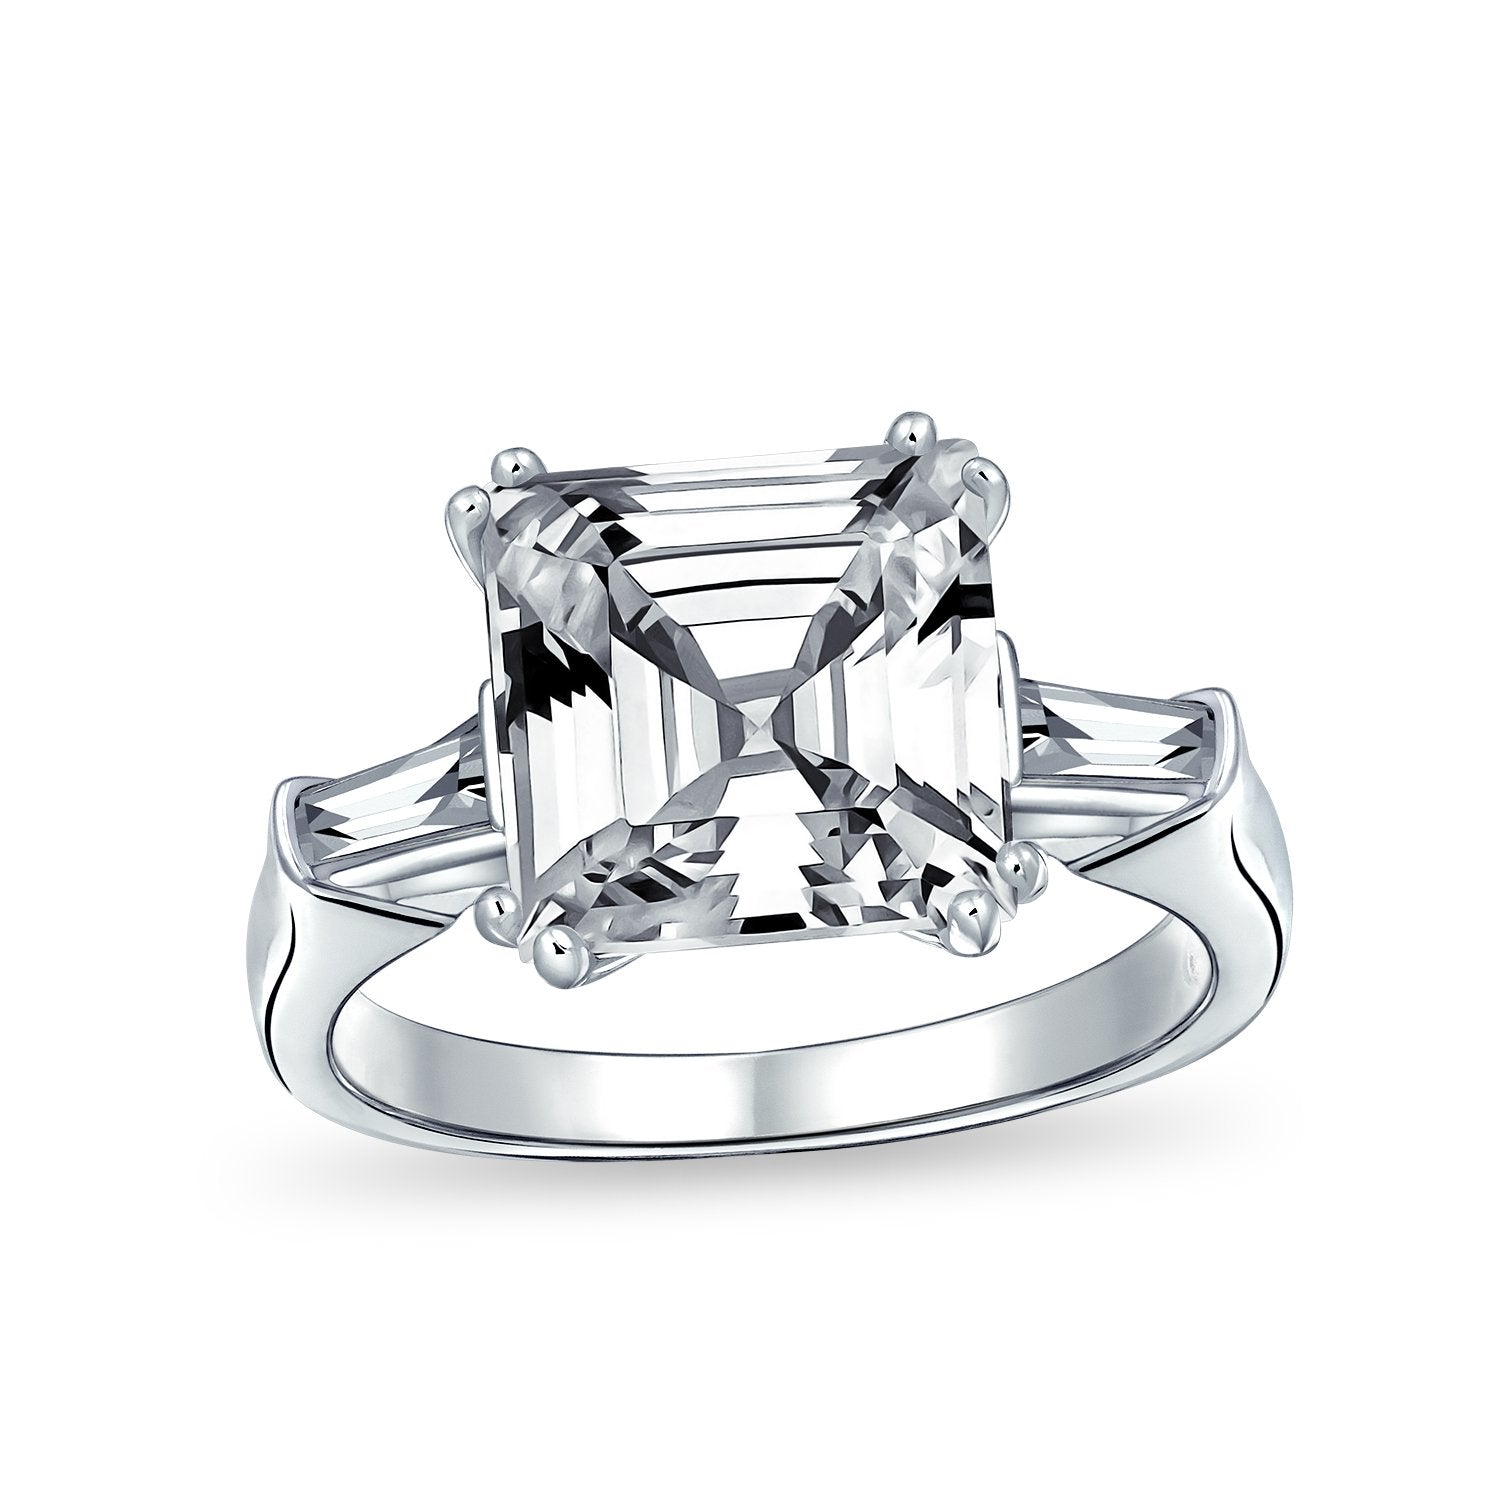 5CT Asscher Cut CZ Baguette Solitaire Engagement Ring Sterling Silver - Joyeria Lady